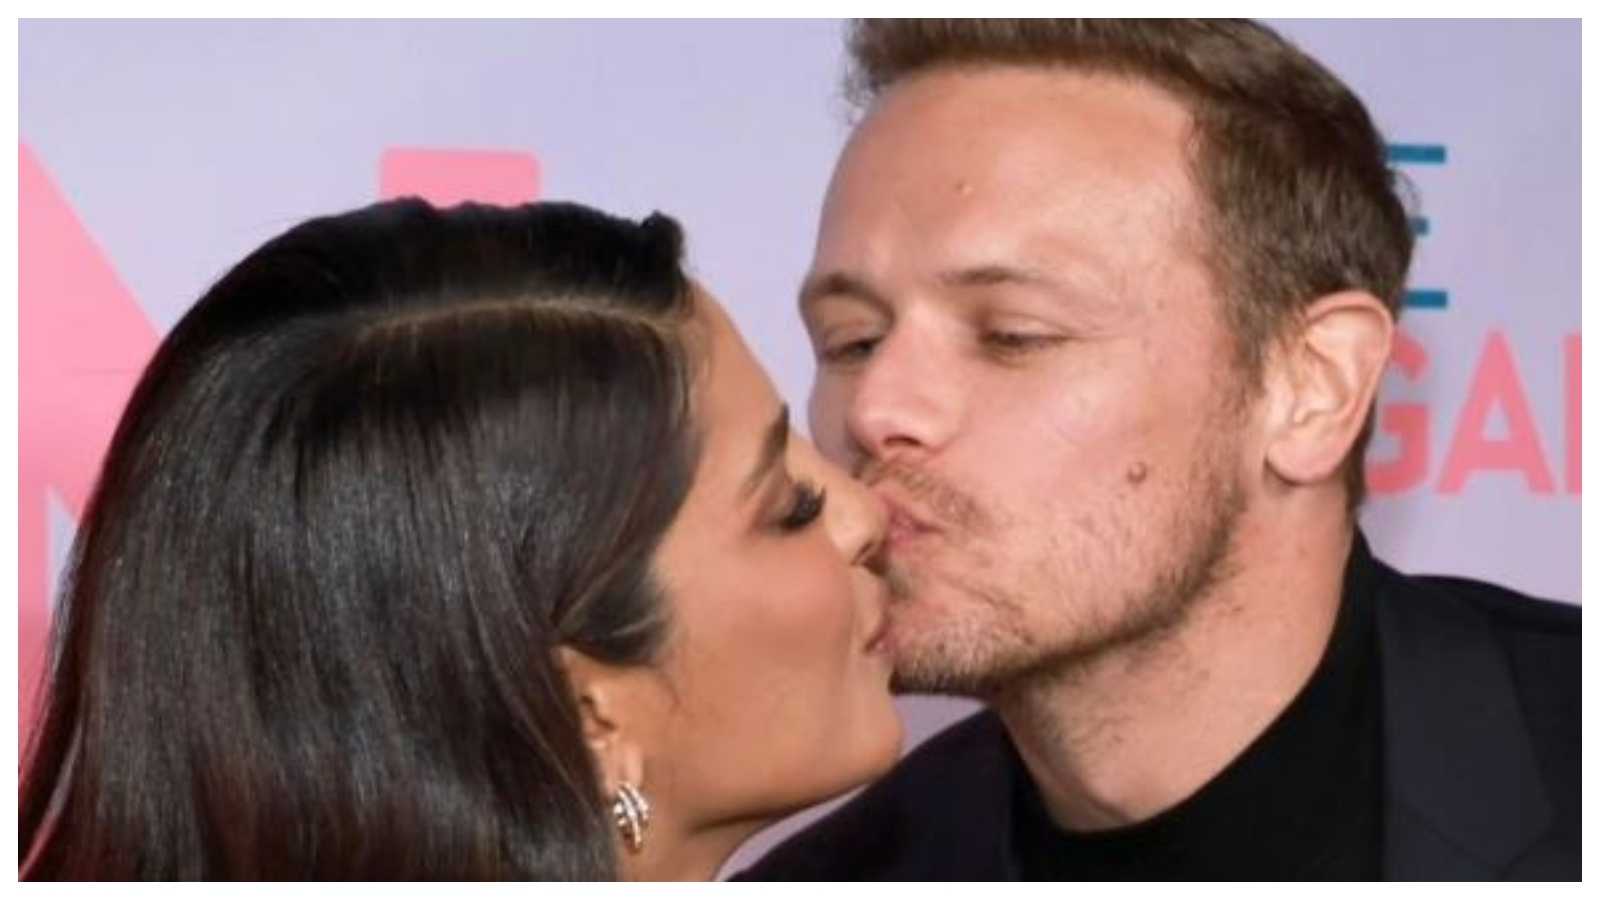 'Such tenderness between friends': Love Again star Sam Heughan kissing Priyanka Chopra Jonas on her nose leaves fans in awe